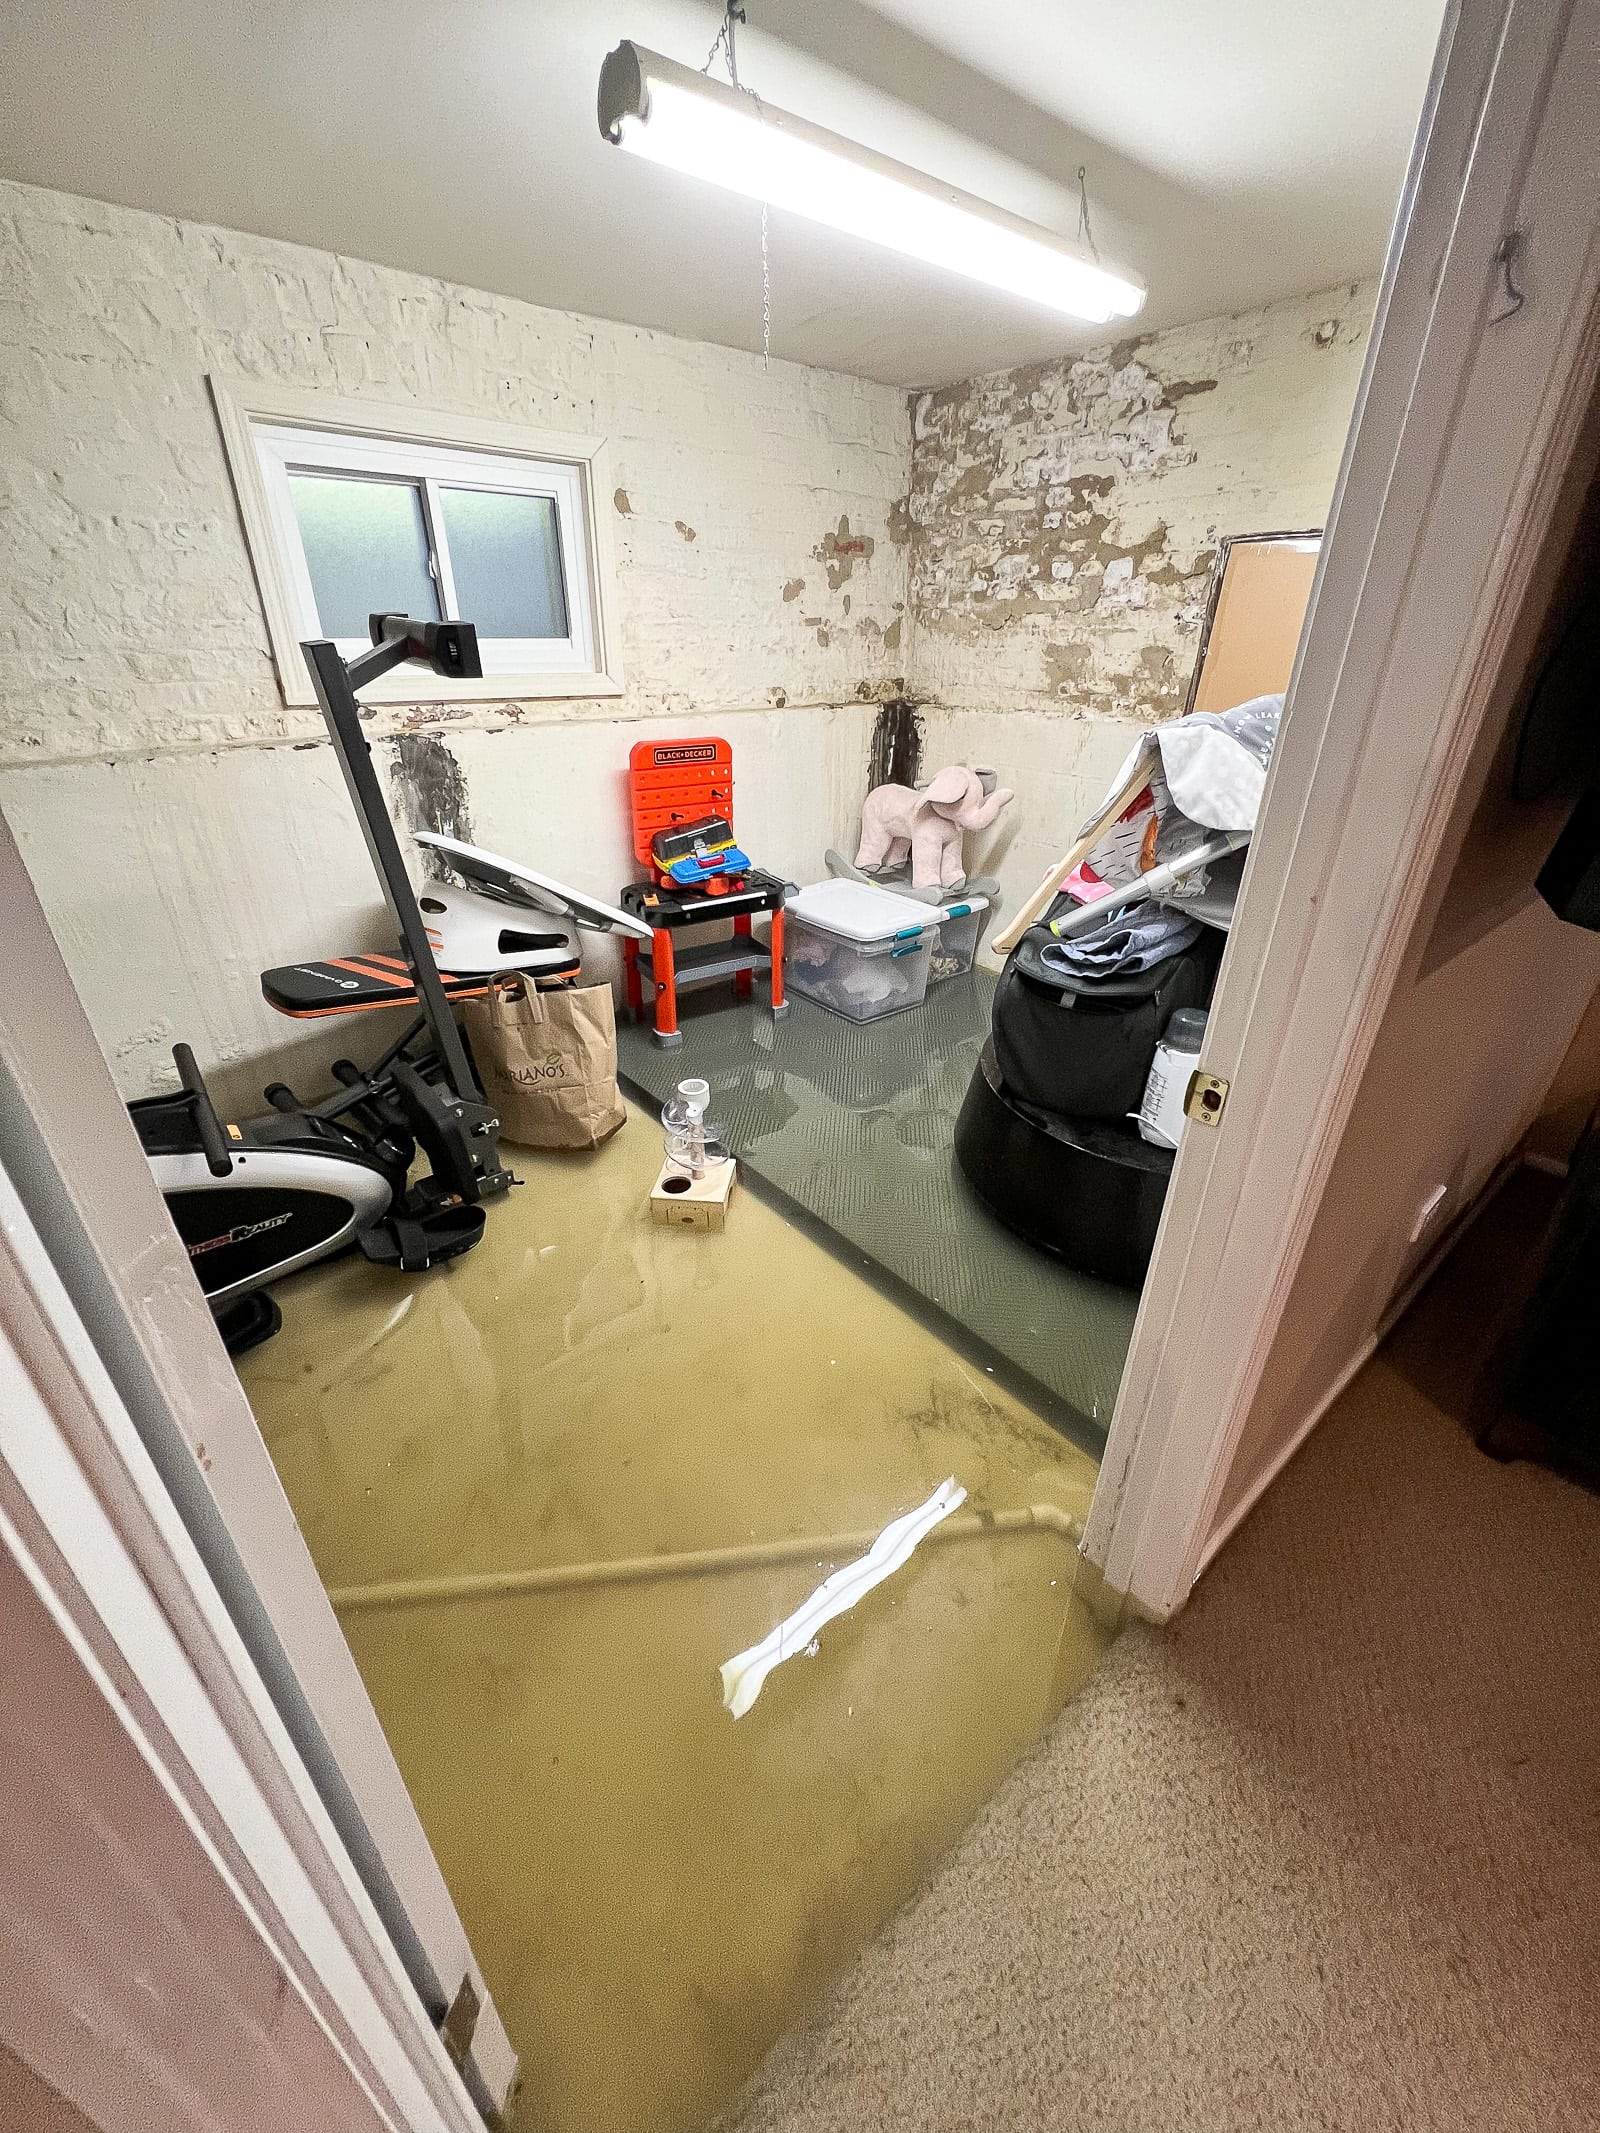 Our basement flood